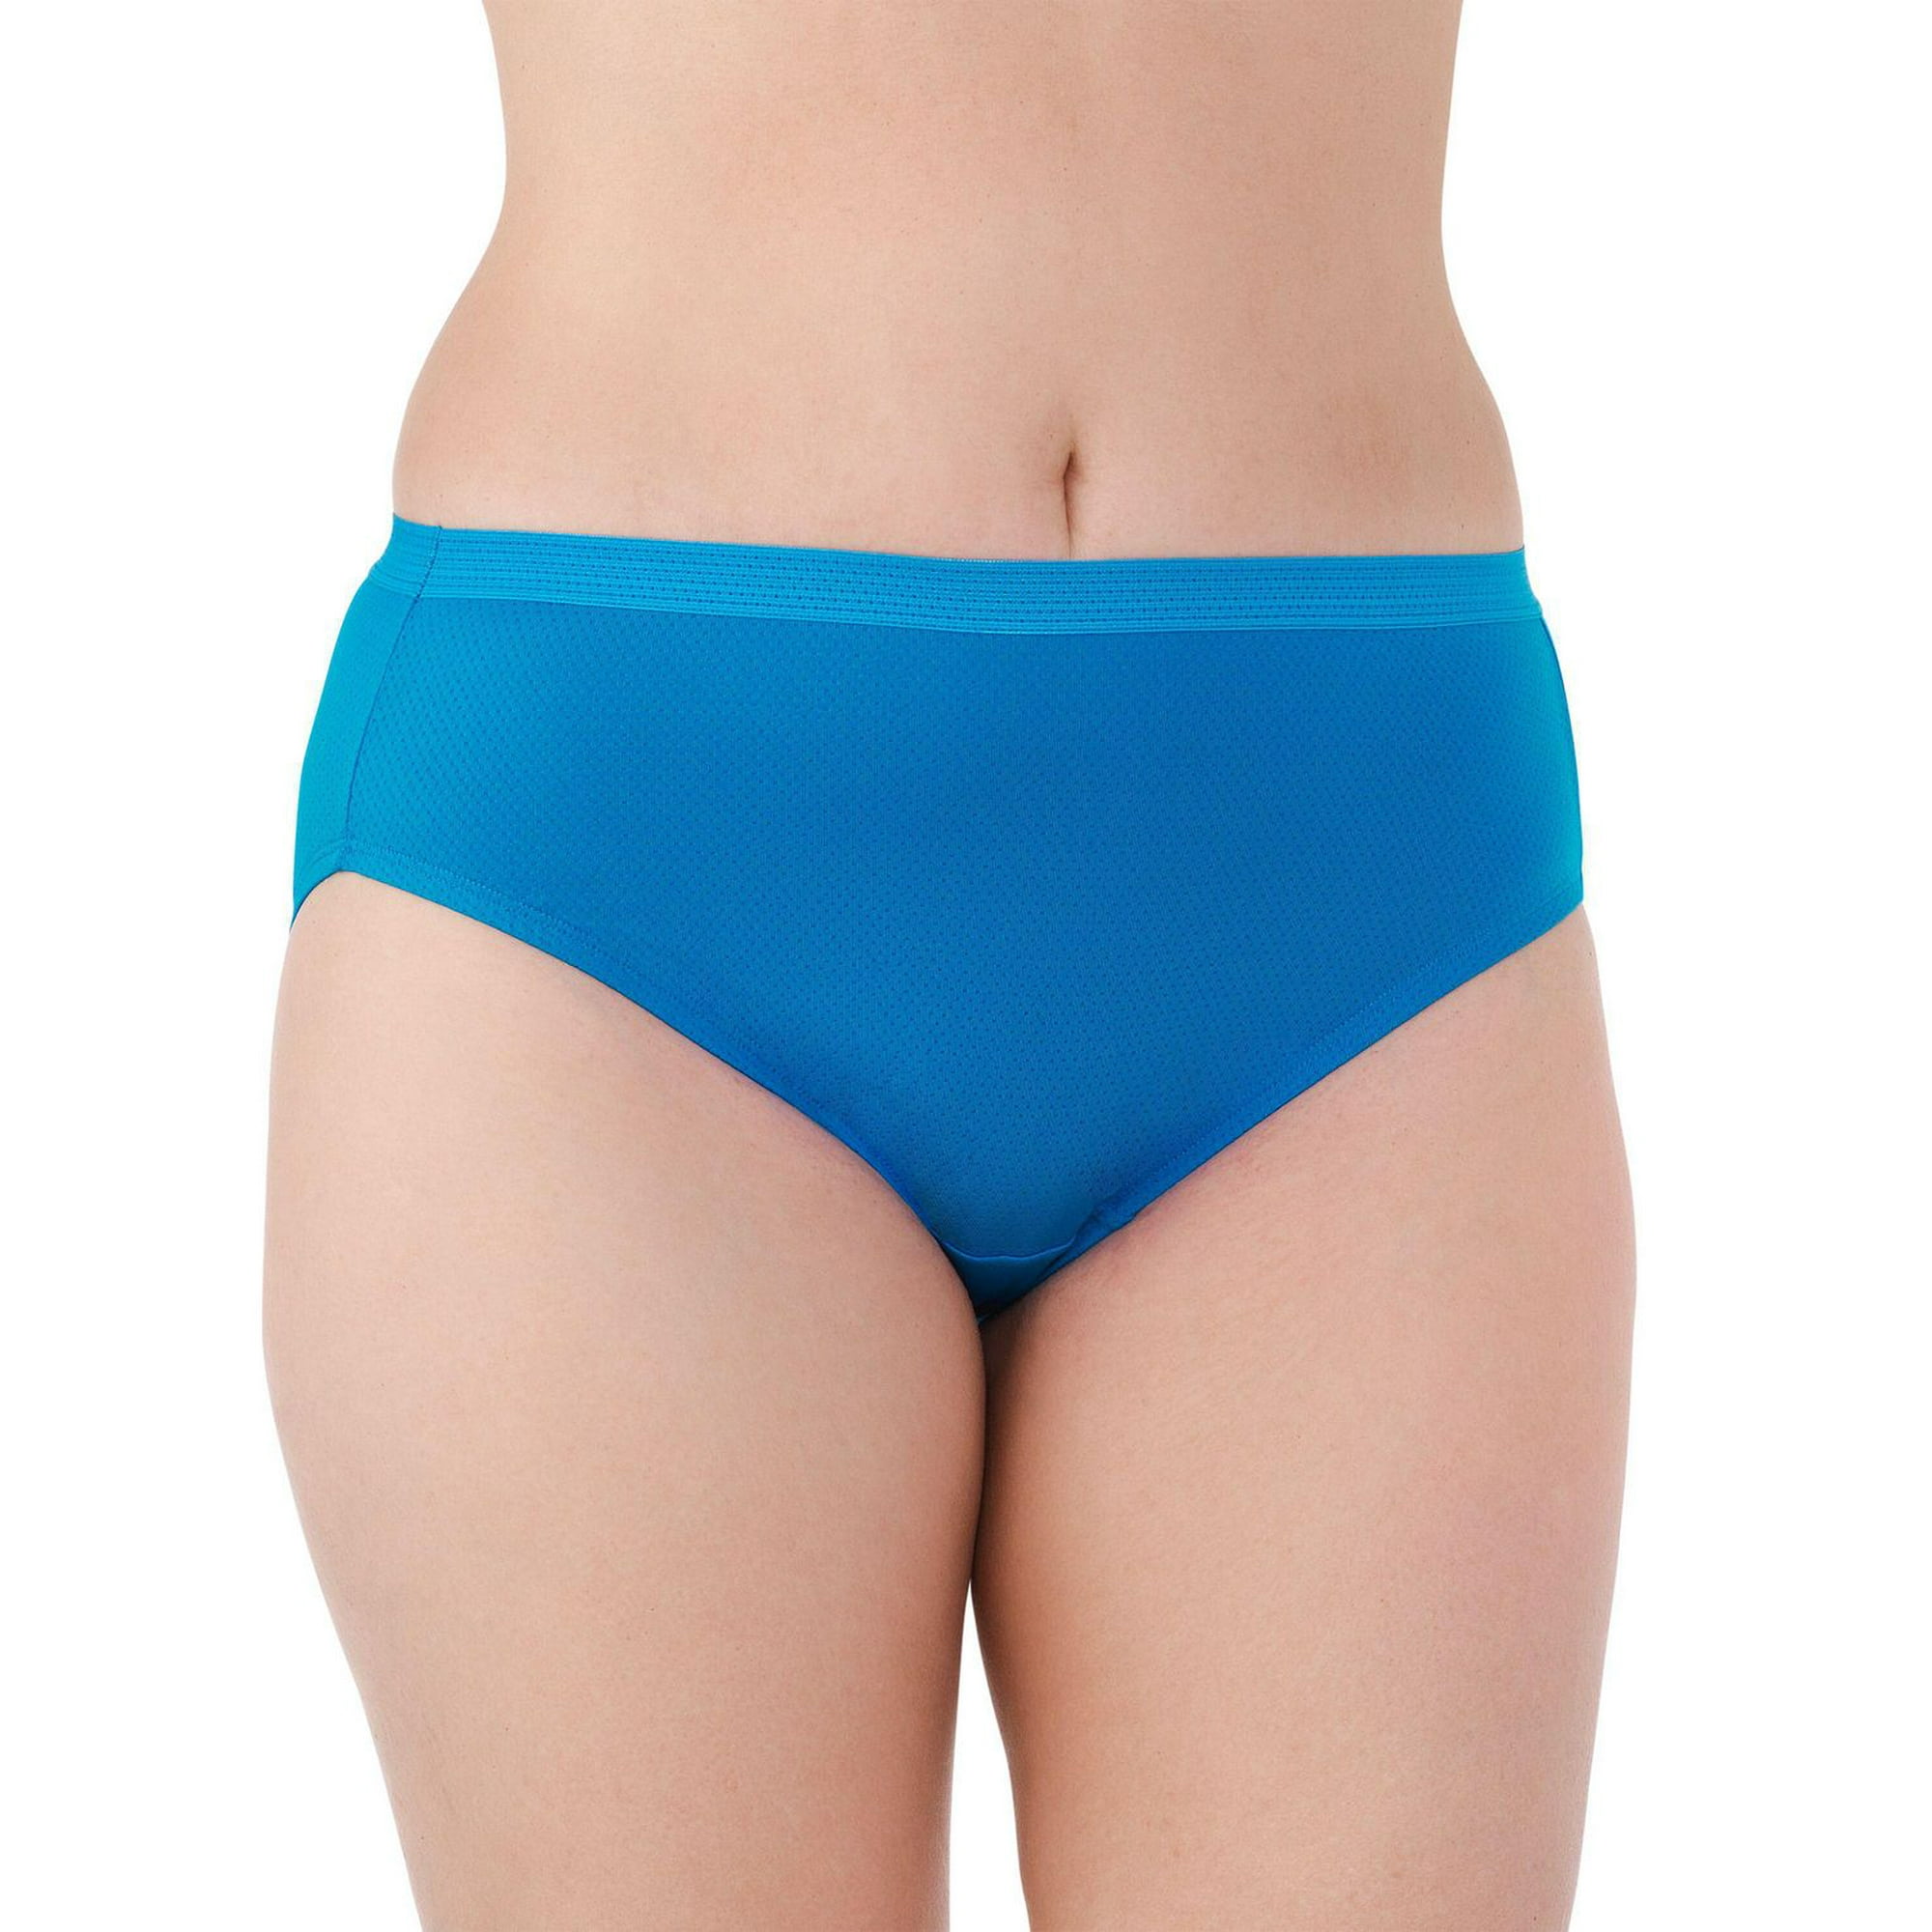 Panties Blue K-11 Ladies Underwear, Mid, Size: Medium at best